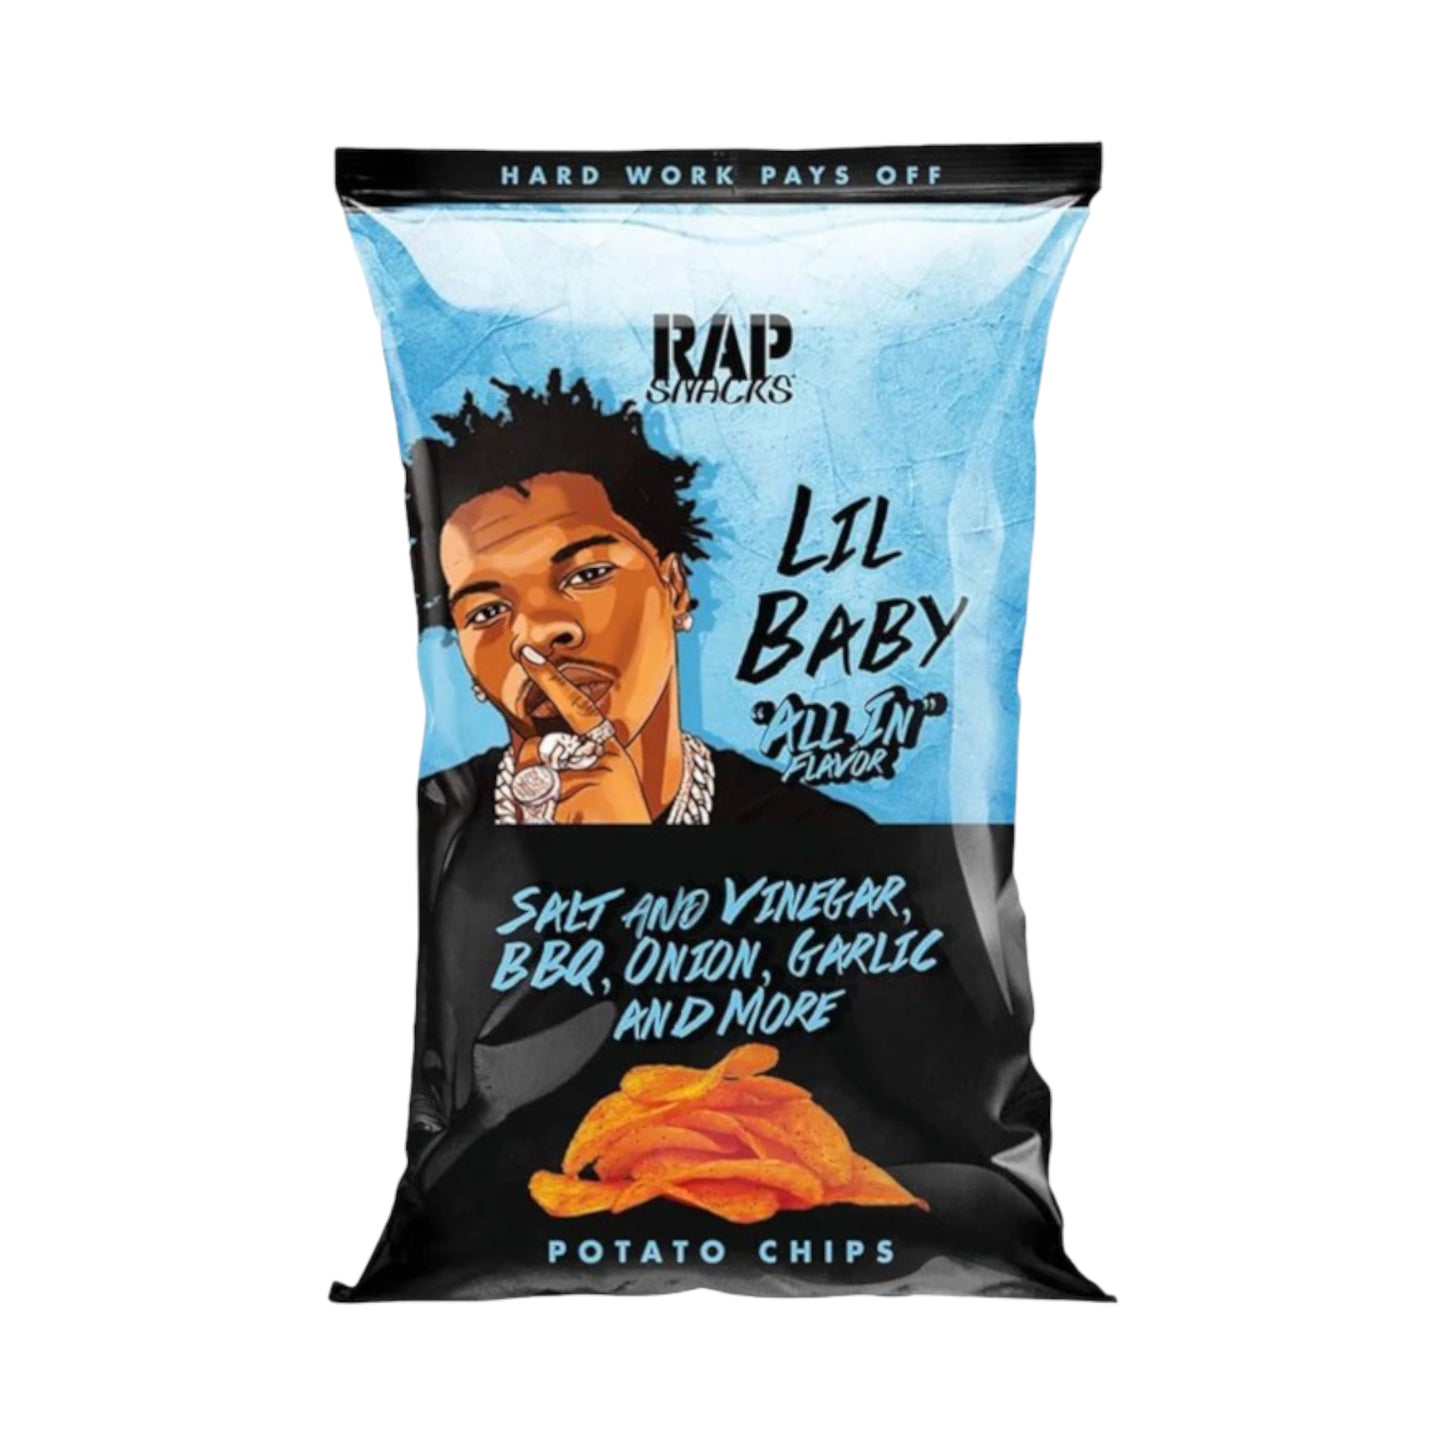 Rap Snacks Lil Baby All In Potato Chips - 2.5oz (71g)